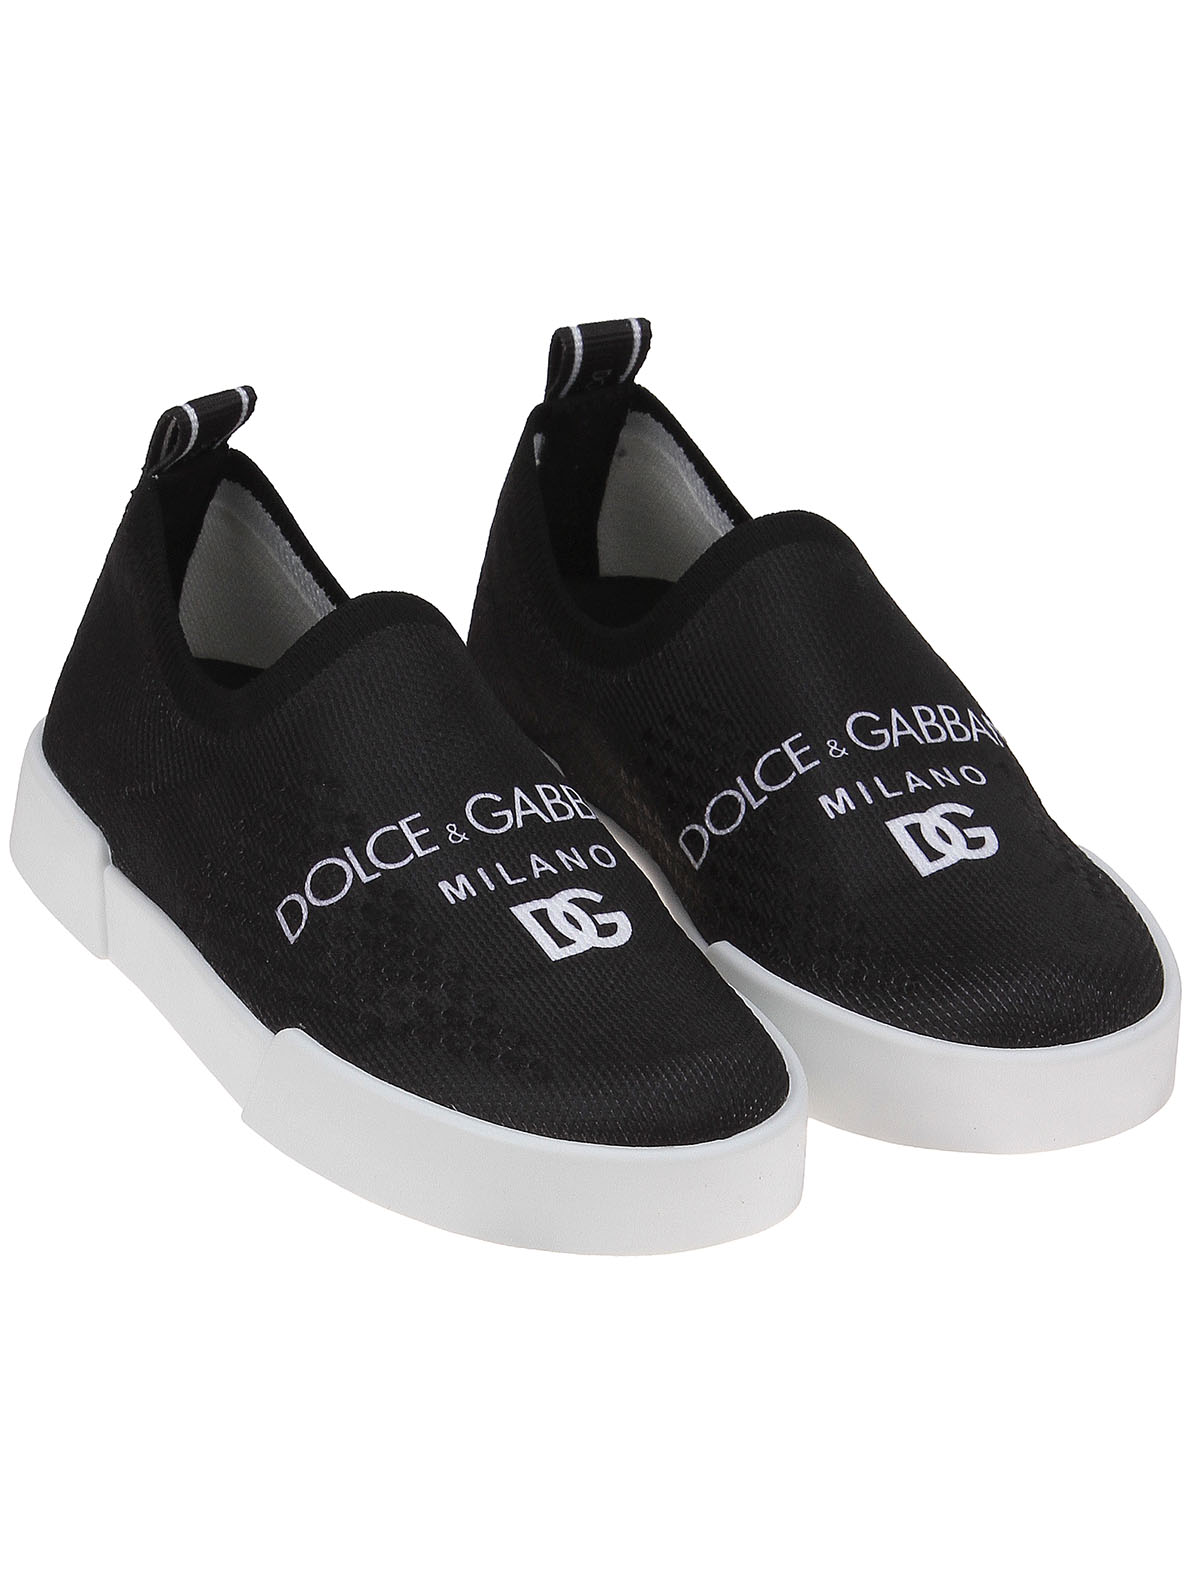 Слипоны Dolce & Gabbana 2489020, цвет черный, размер 37